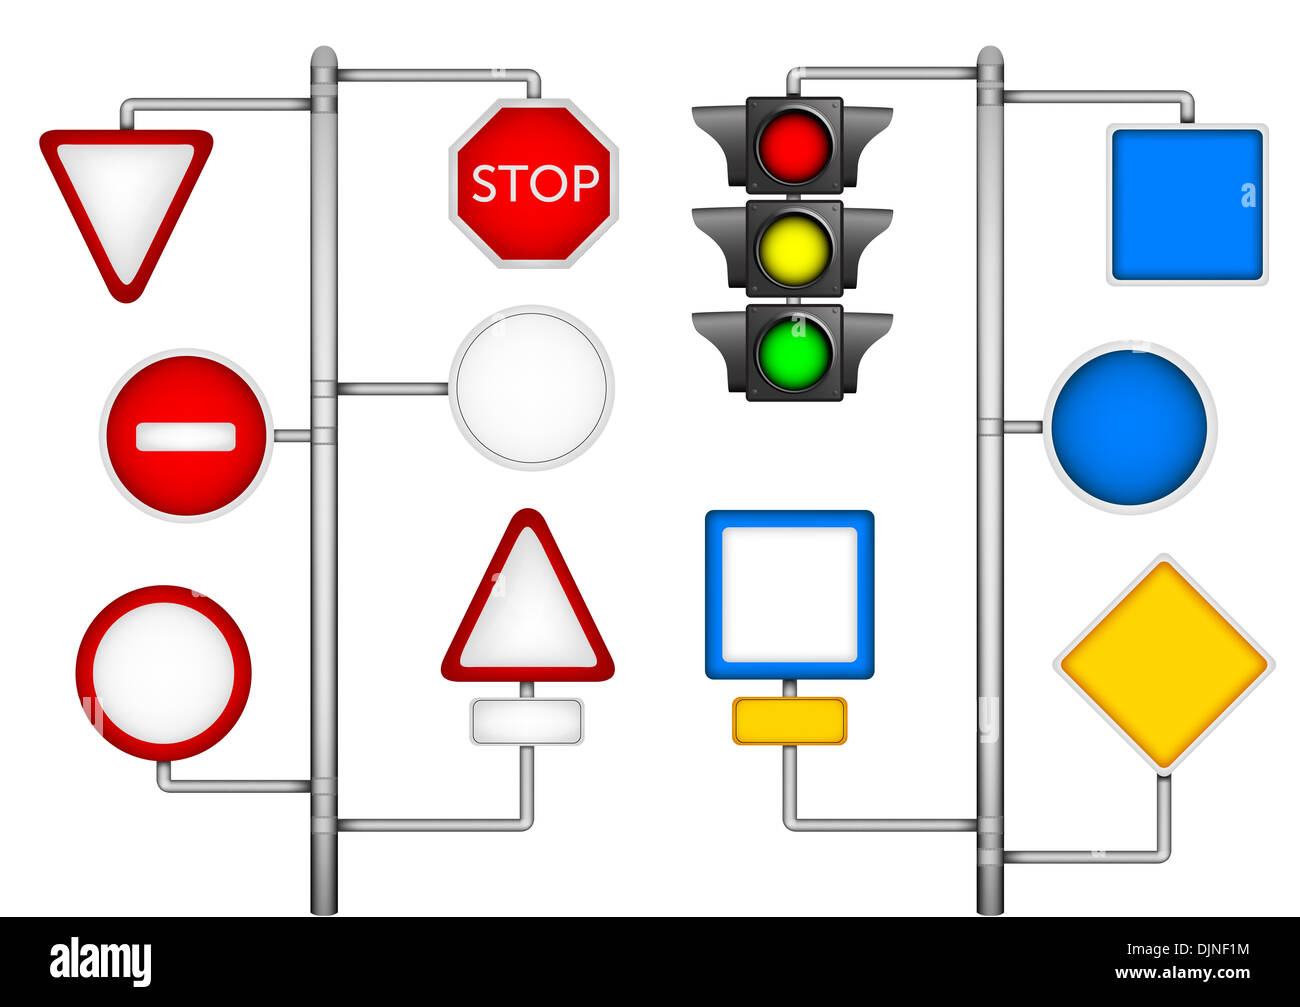 Знаки светофора жд. Знаки семафора на ЖД. Светофор на белом фоне. Железнодорожный семафор. Знаки светофора для поезда.